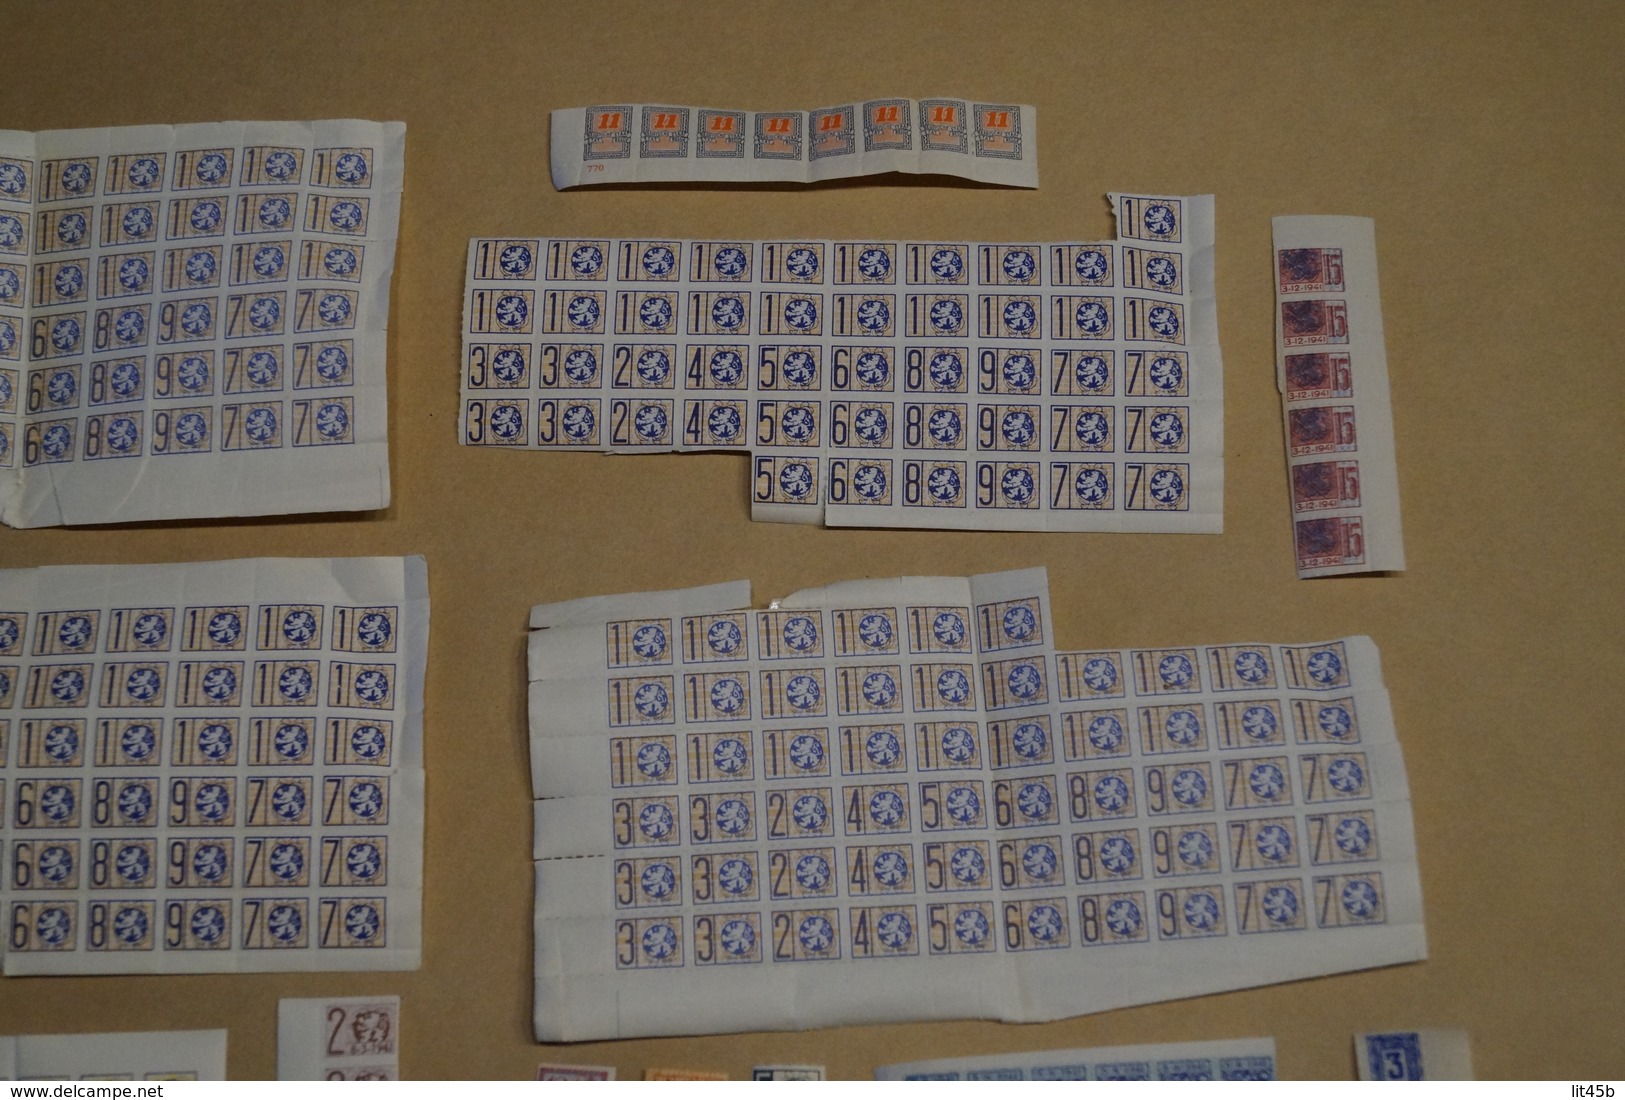 lot important de timbres de ravitaillement,1940-1945,originaux,pour collection